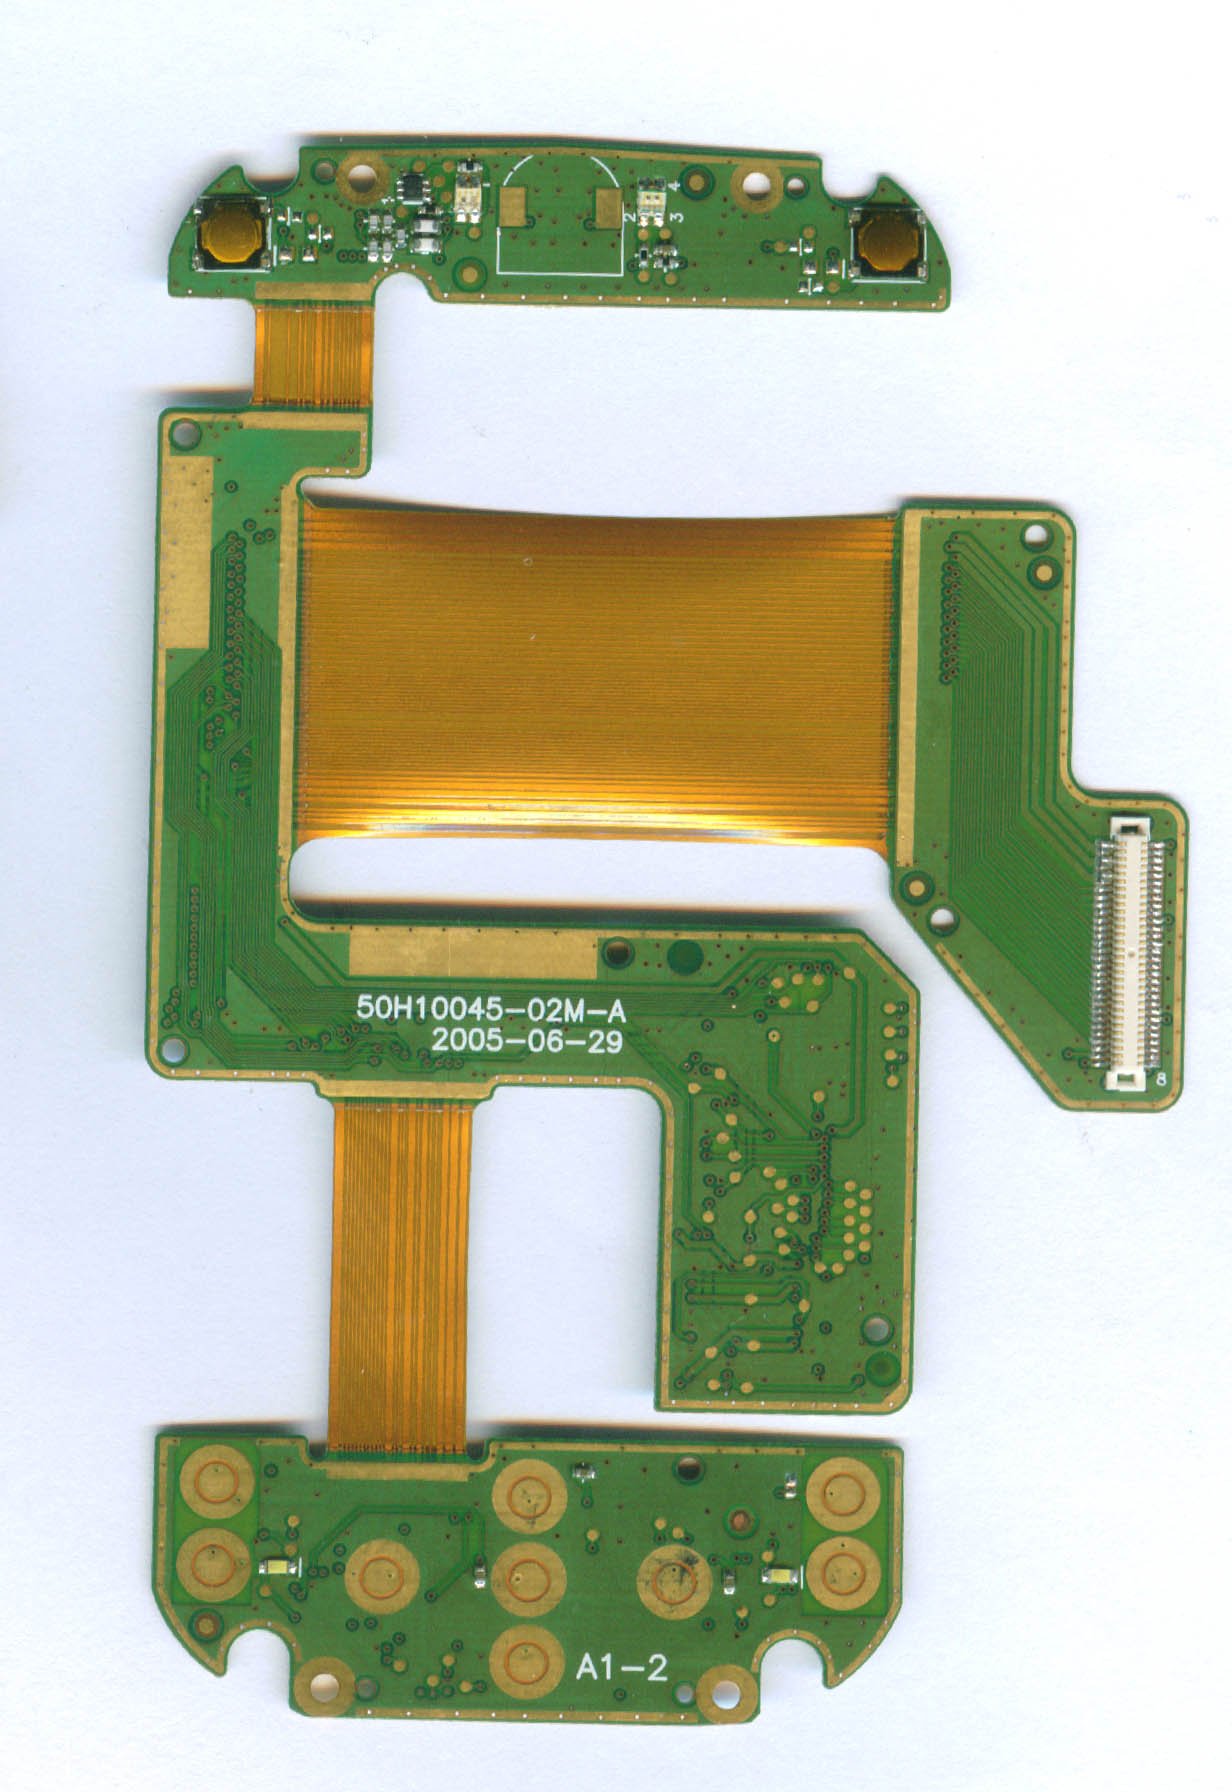 2 layers rigid-flexible PCB